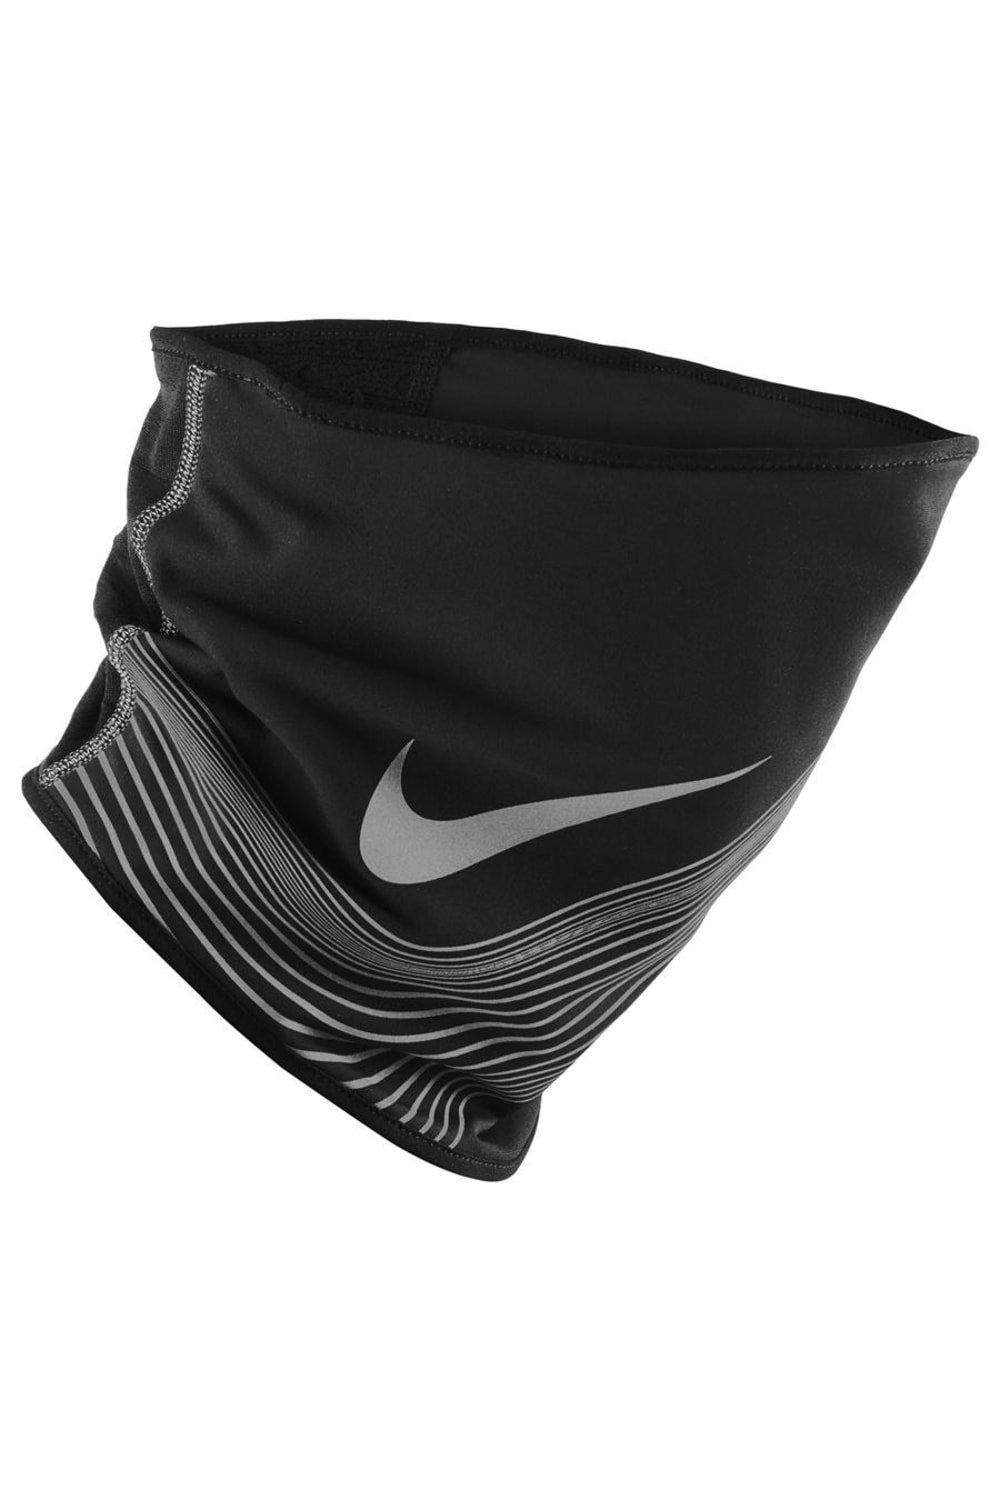 360 Therma-Fit Утеплитель для шеи Nike, черный